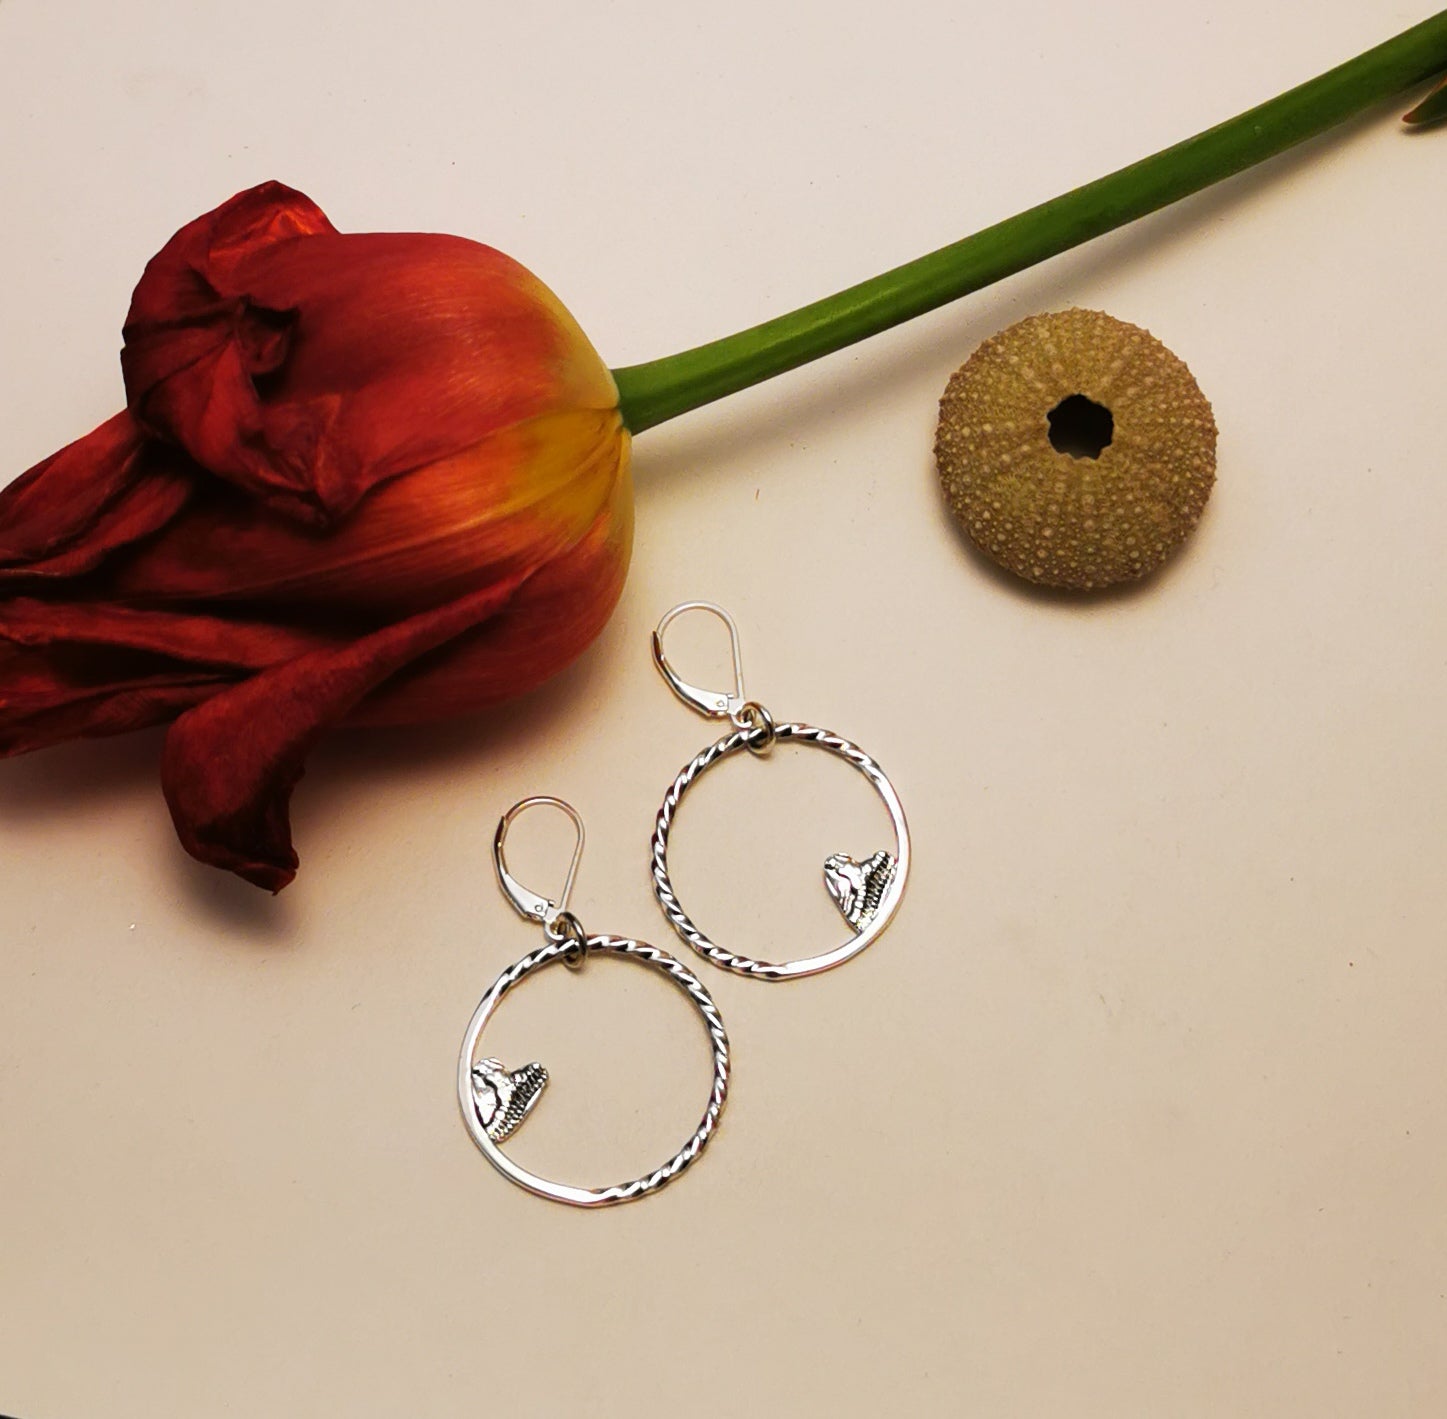 MEDIUM HEART OF MOON, dangling medium hoop earrings in sterling silver